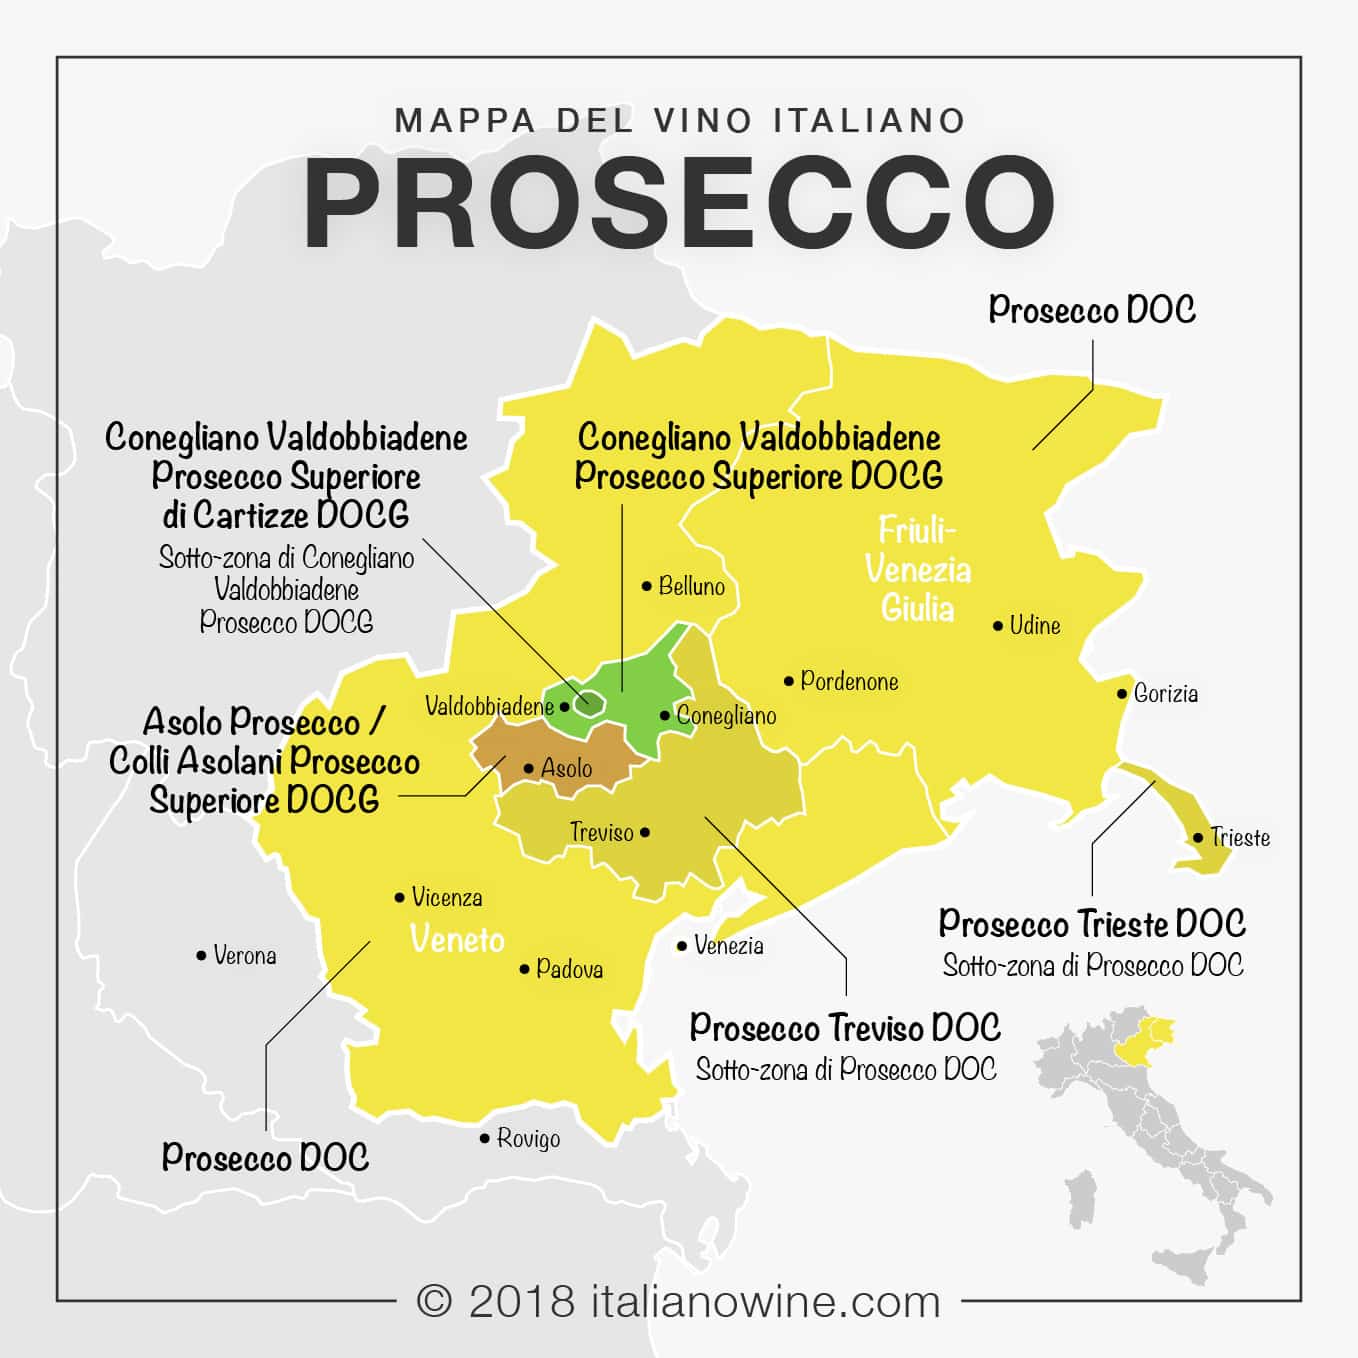 Le prosecco, ce vin italien qui s'exporte désormais jusqu'en Chine